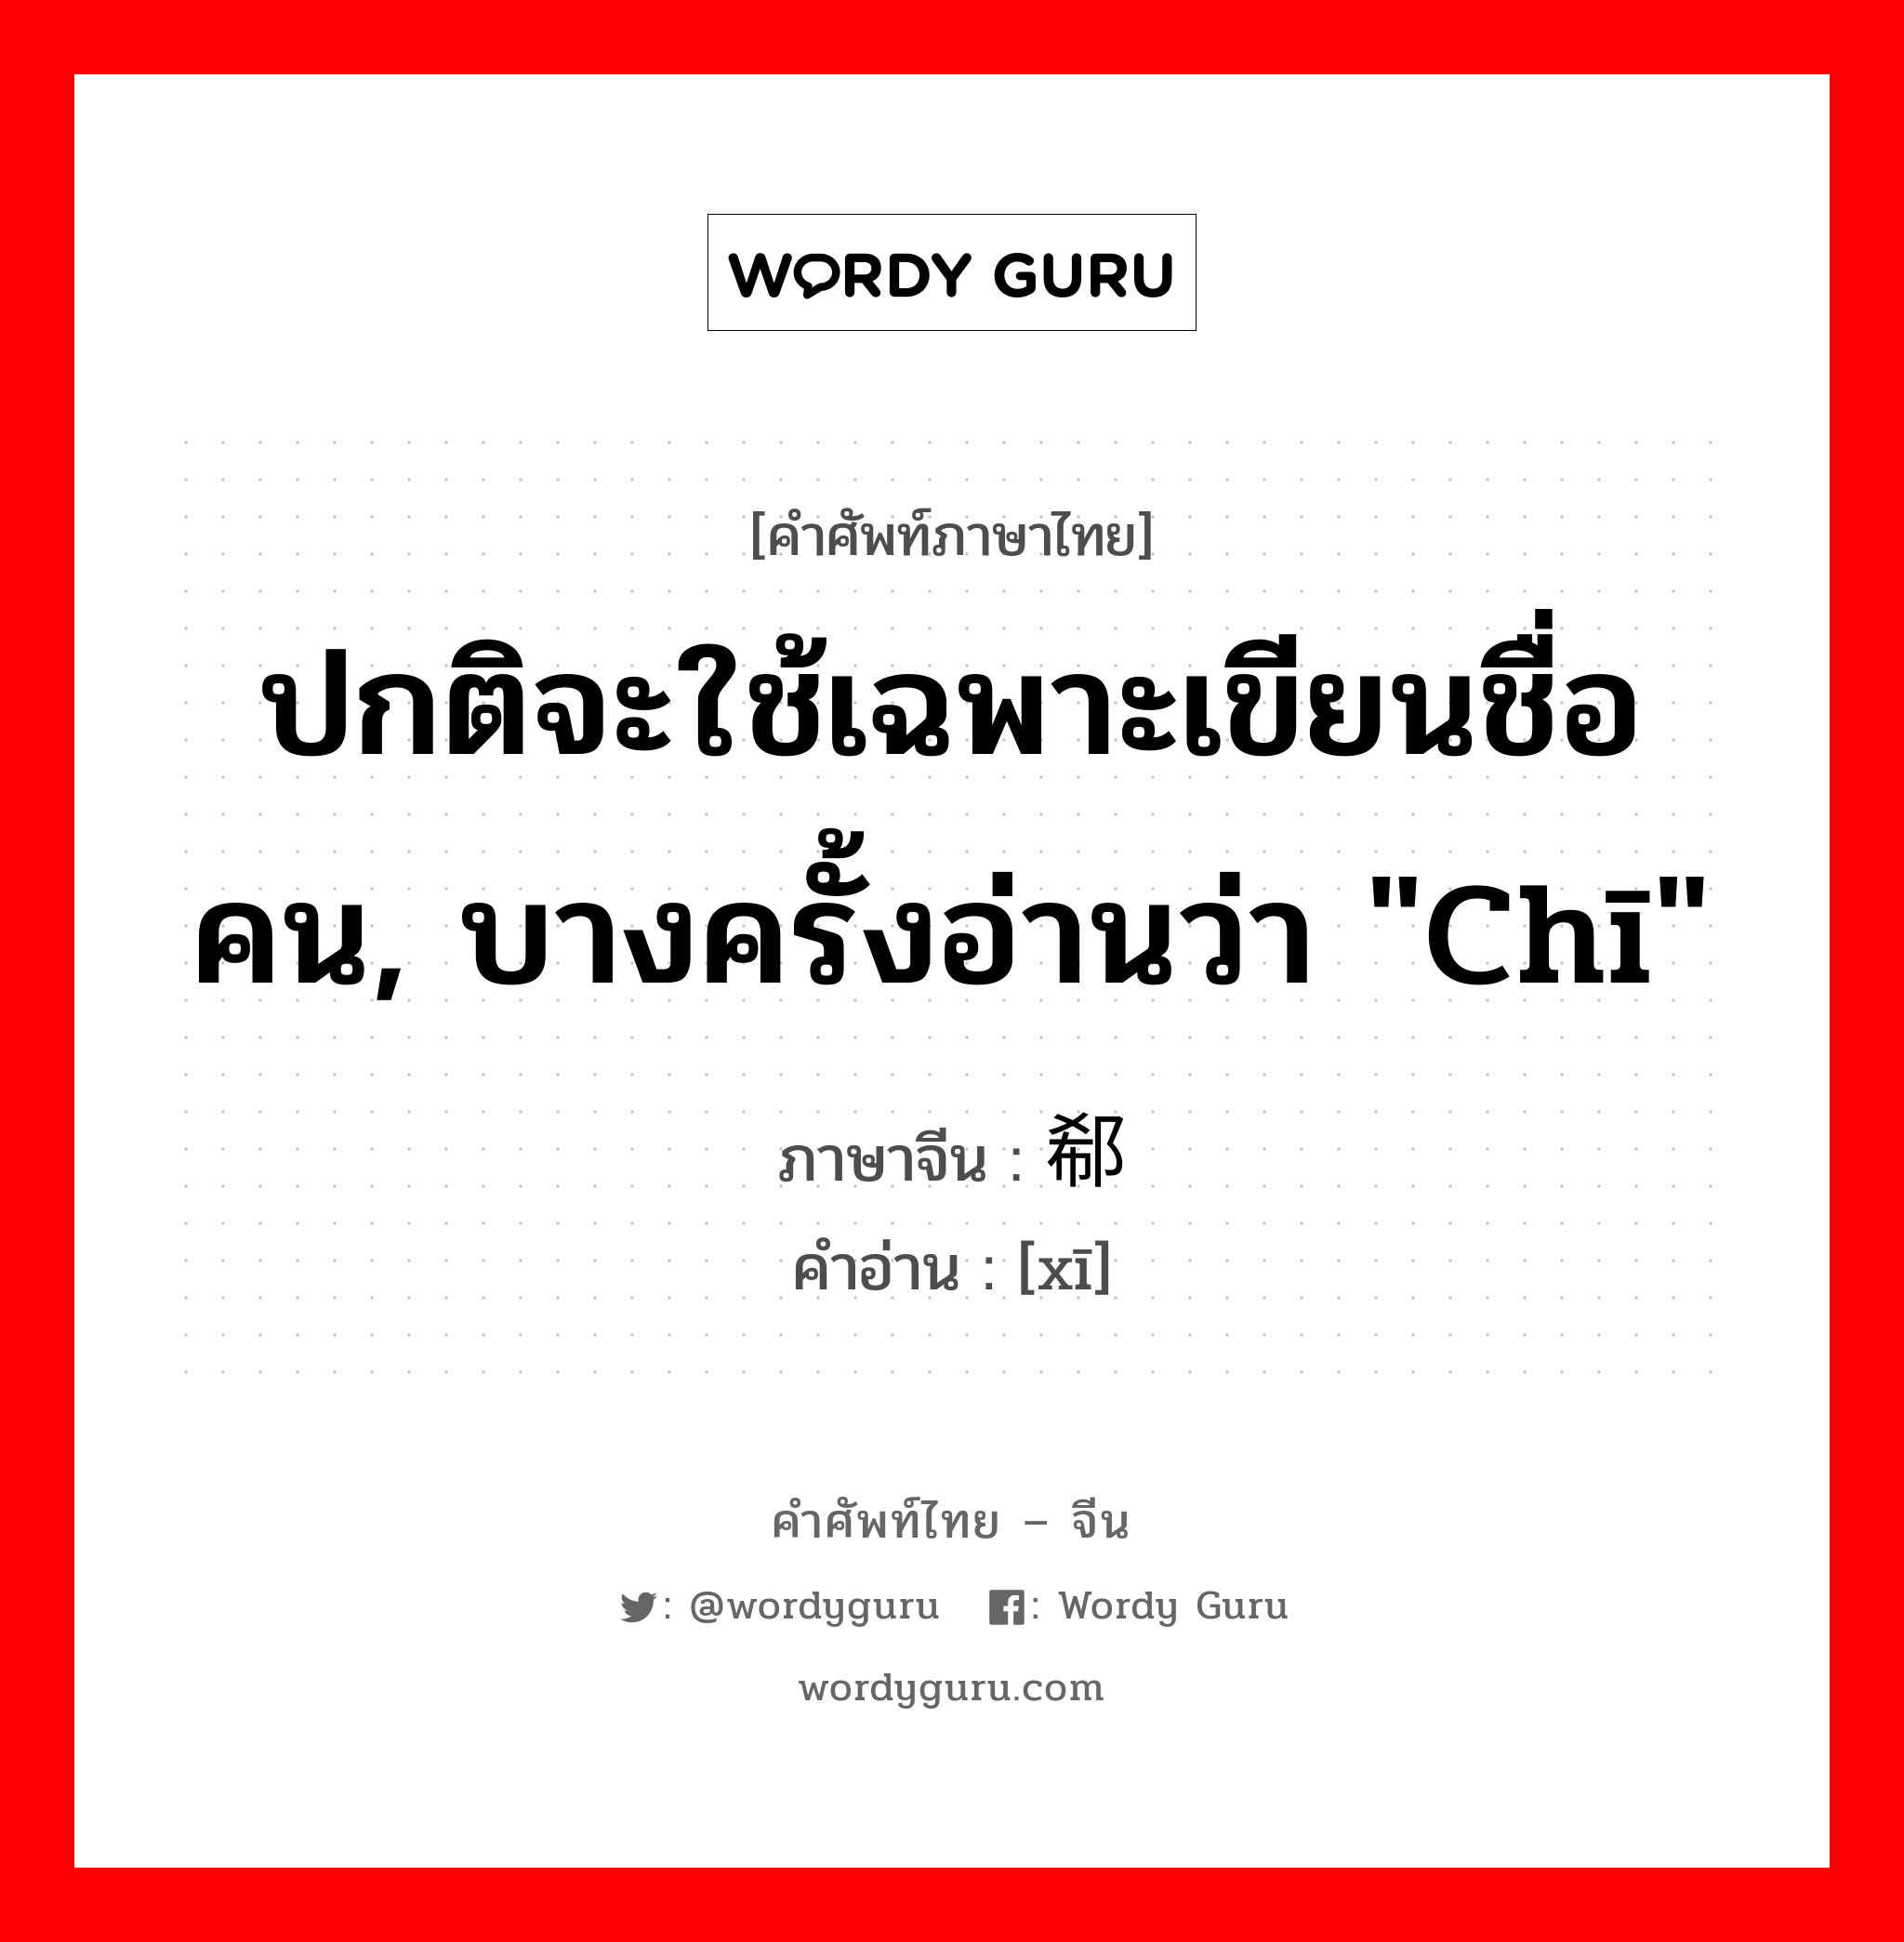 郗 ภาษาไทย?, คำศัพท์ภาษาไทย - จีน 郗 ภาษาจีน ปกติจะใช้เฉพาะเขียนชื่อคน, บางครั้งอ่านว่า "chī" คำอ่าน [xī]